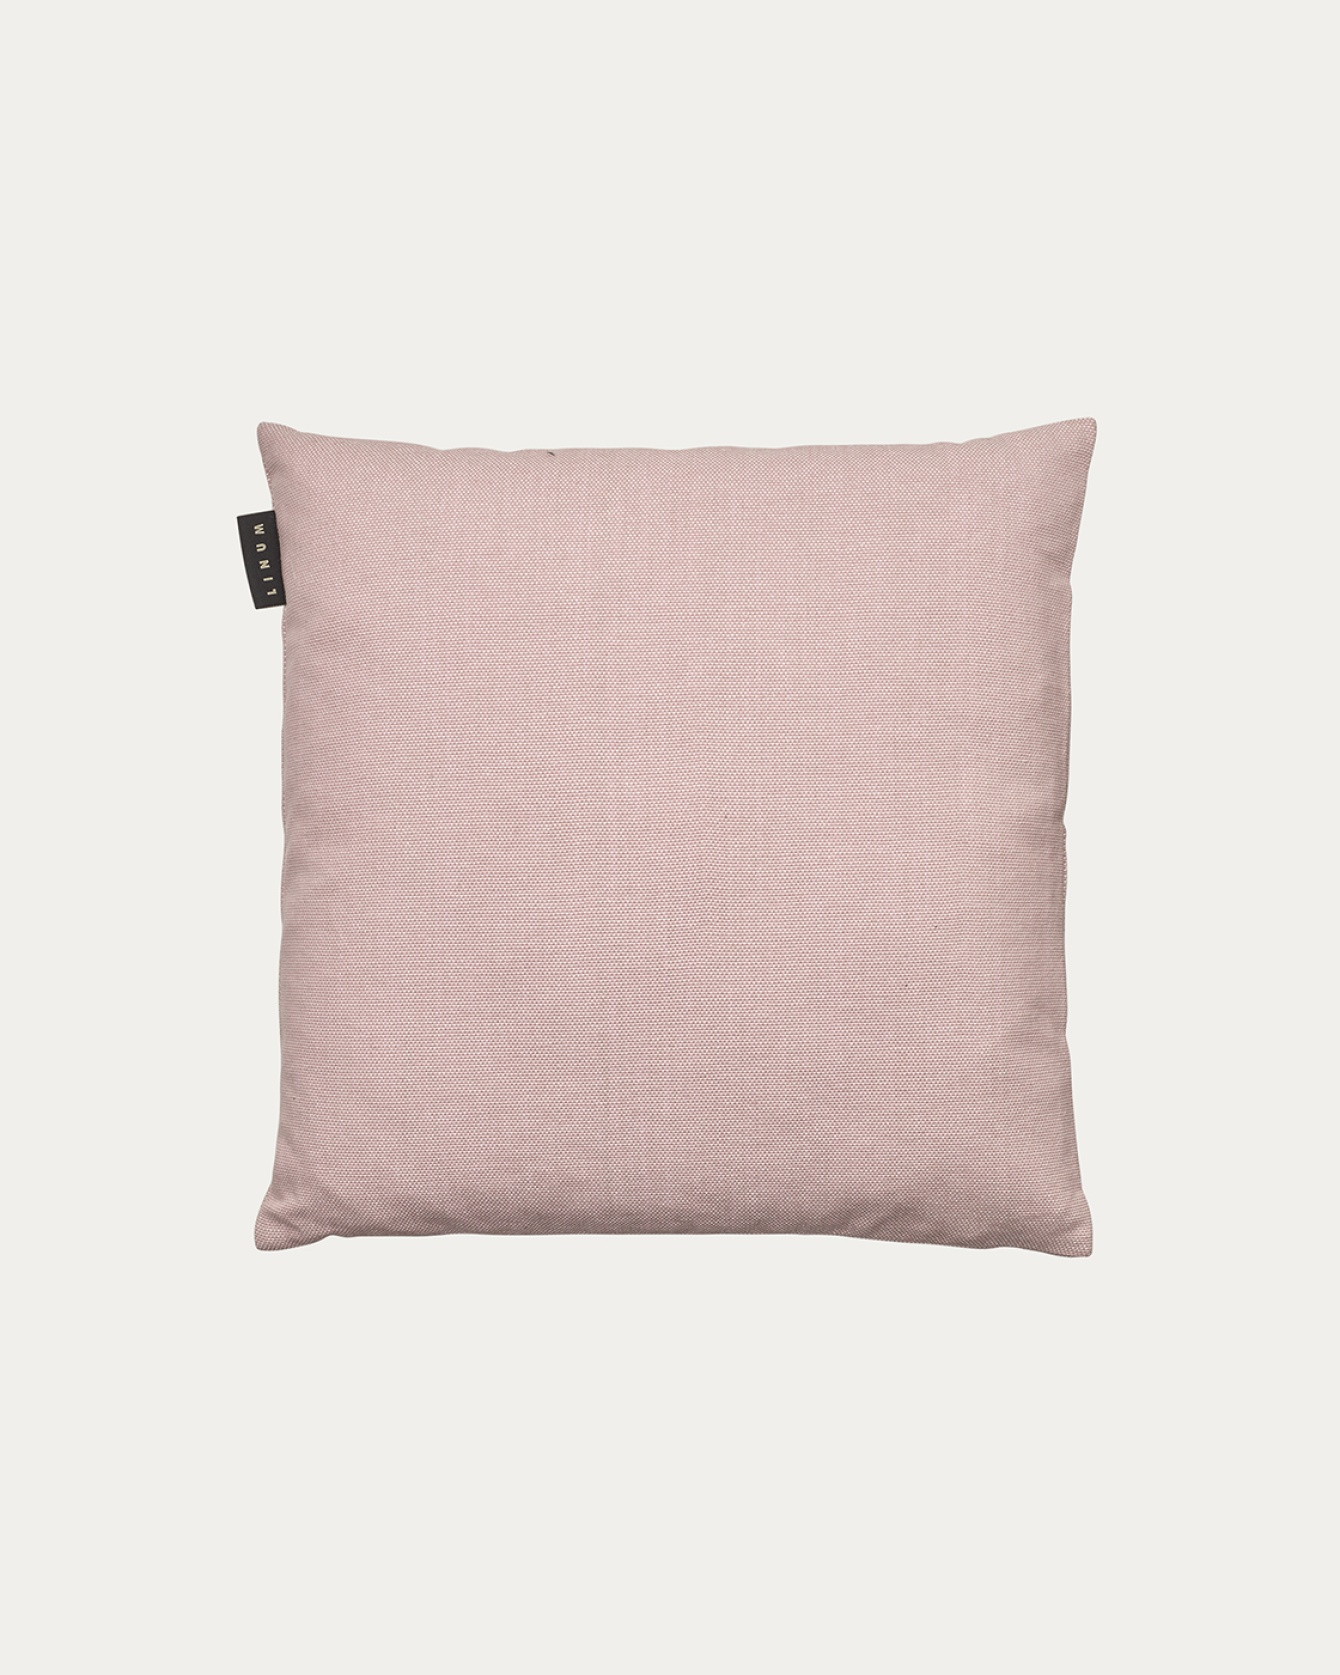 Produktbild dammig rosa PEPPER kuddfodral av mjuk bomull från LINUM DESIGN. Lätt att tvätta och hållbar genom generationer. Storlek 40x40 cm.